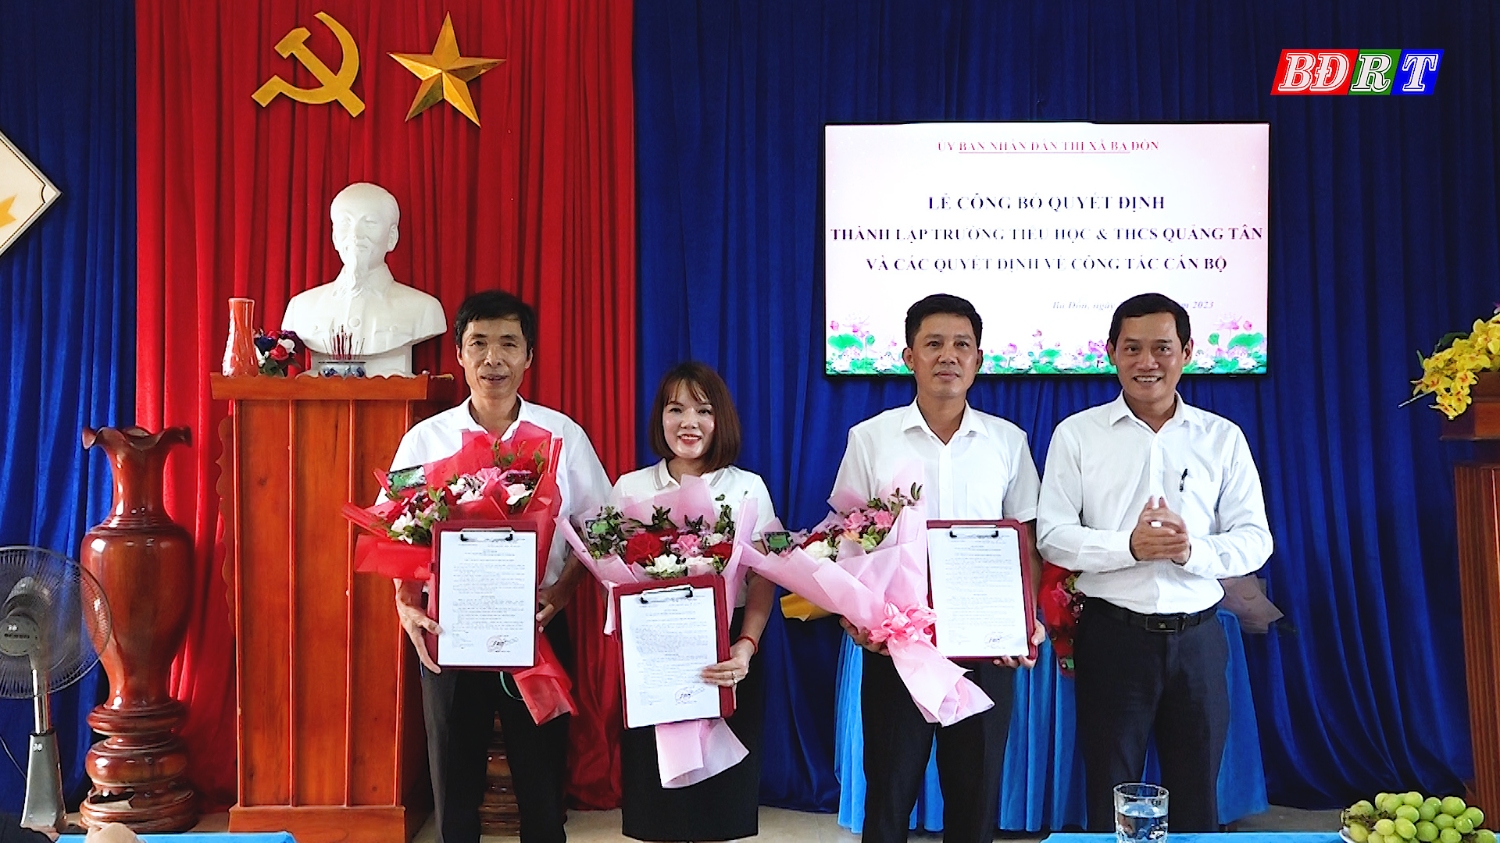 Đồng chí Phó chủ tịch UBND thị xã Nguyễn Văn Tình trao quyết định công tác cán bộ cho Phó hiệu trưởng của nhà trường